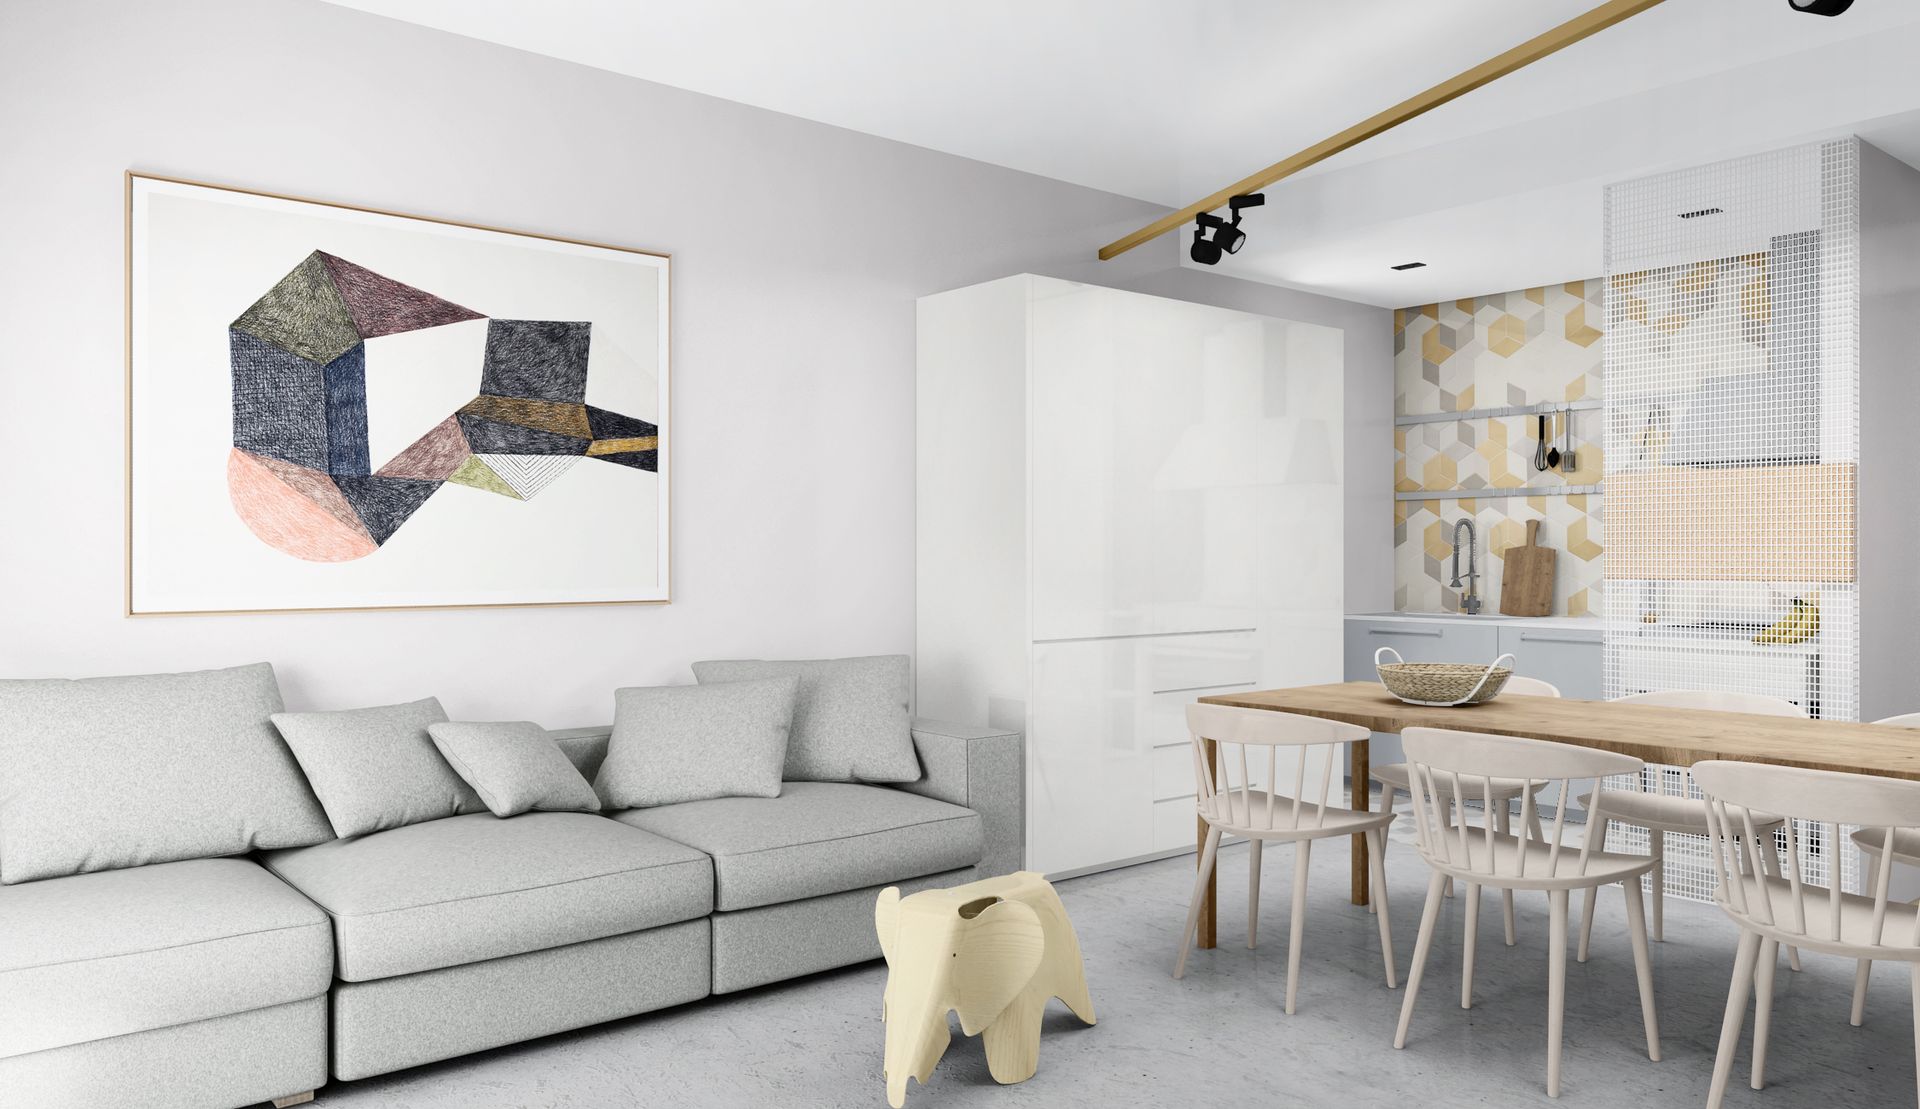 Progetto interior design, ristrutturazione casa vacanze Lago di Garda, Lago di Como, Lago d'Iseo. Officina Magisafi architettura design - vista living